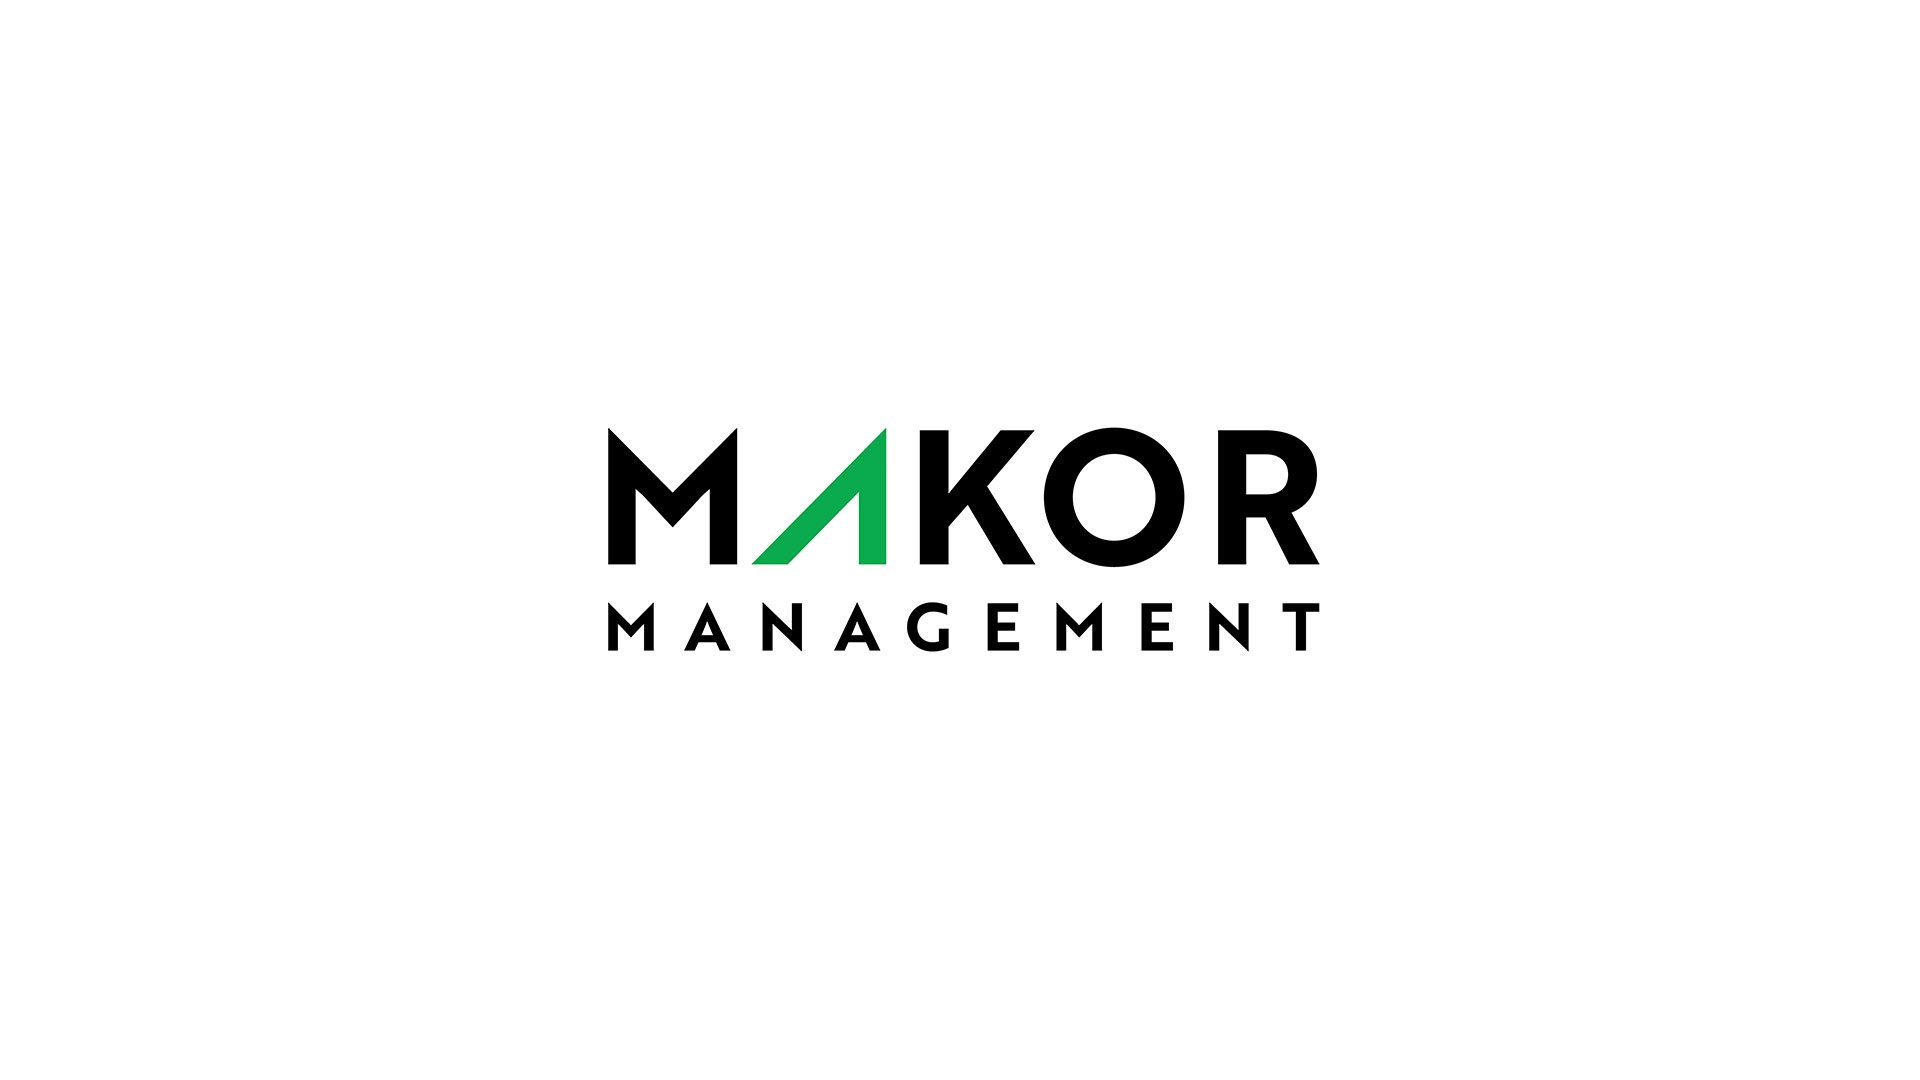 makor management logo on white